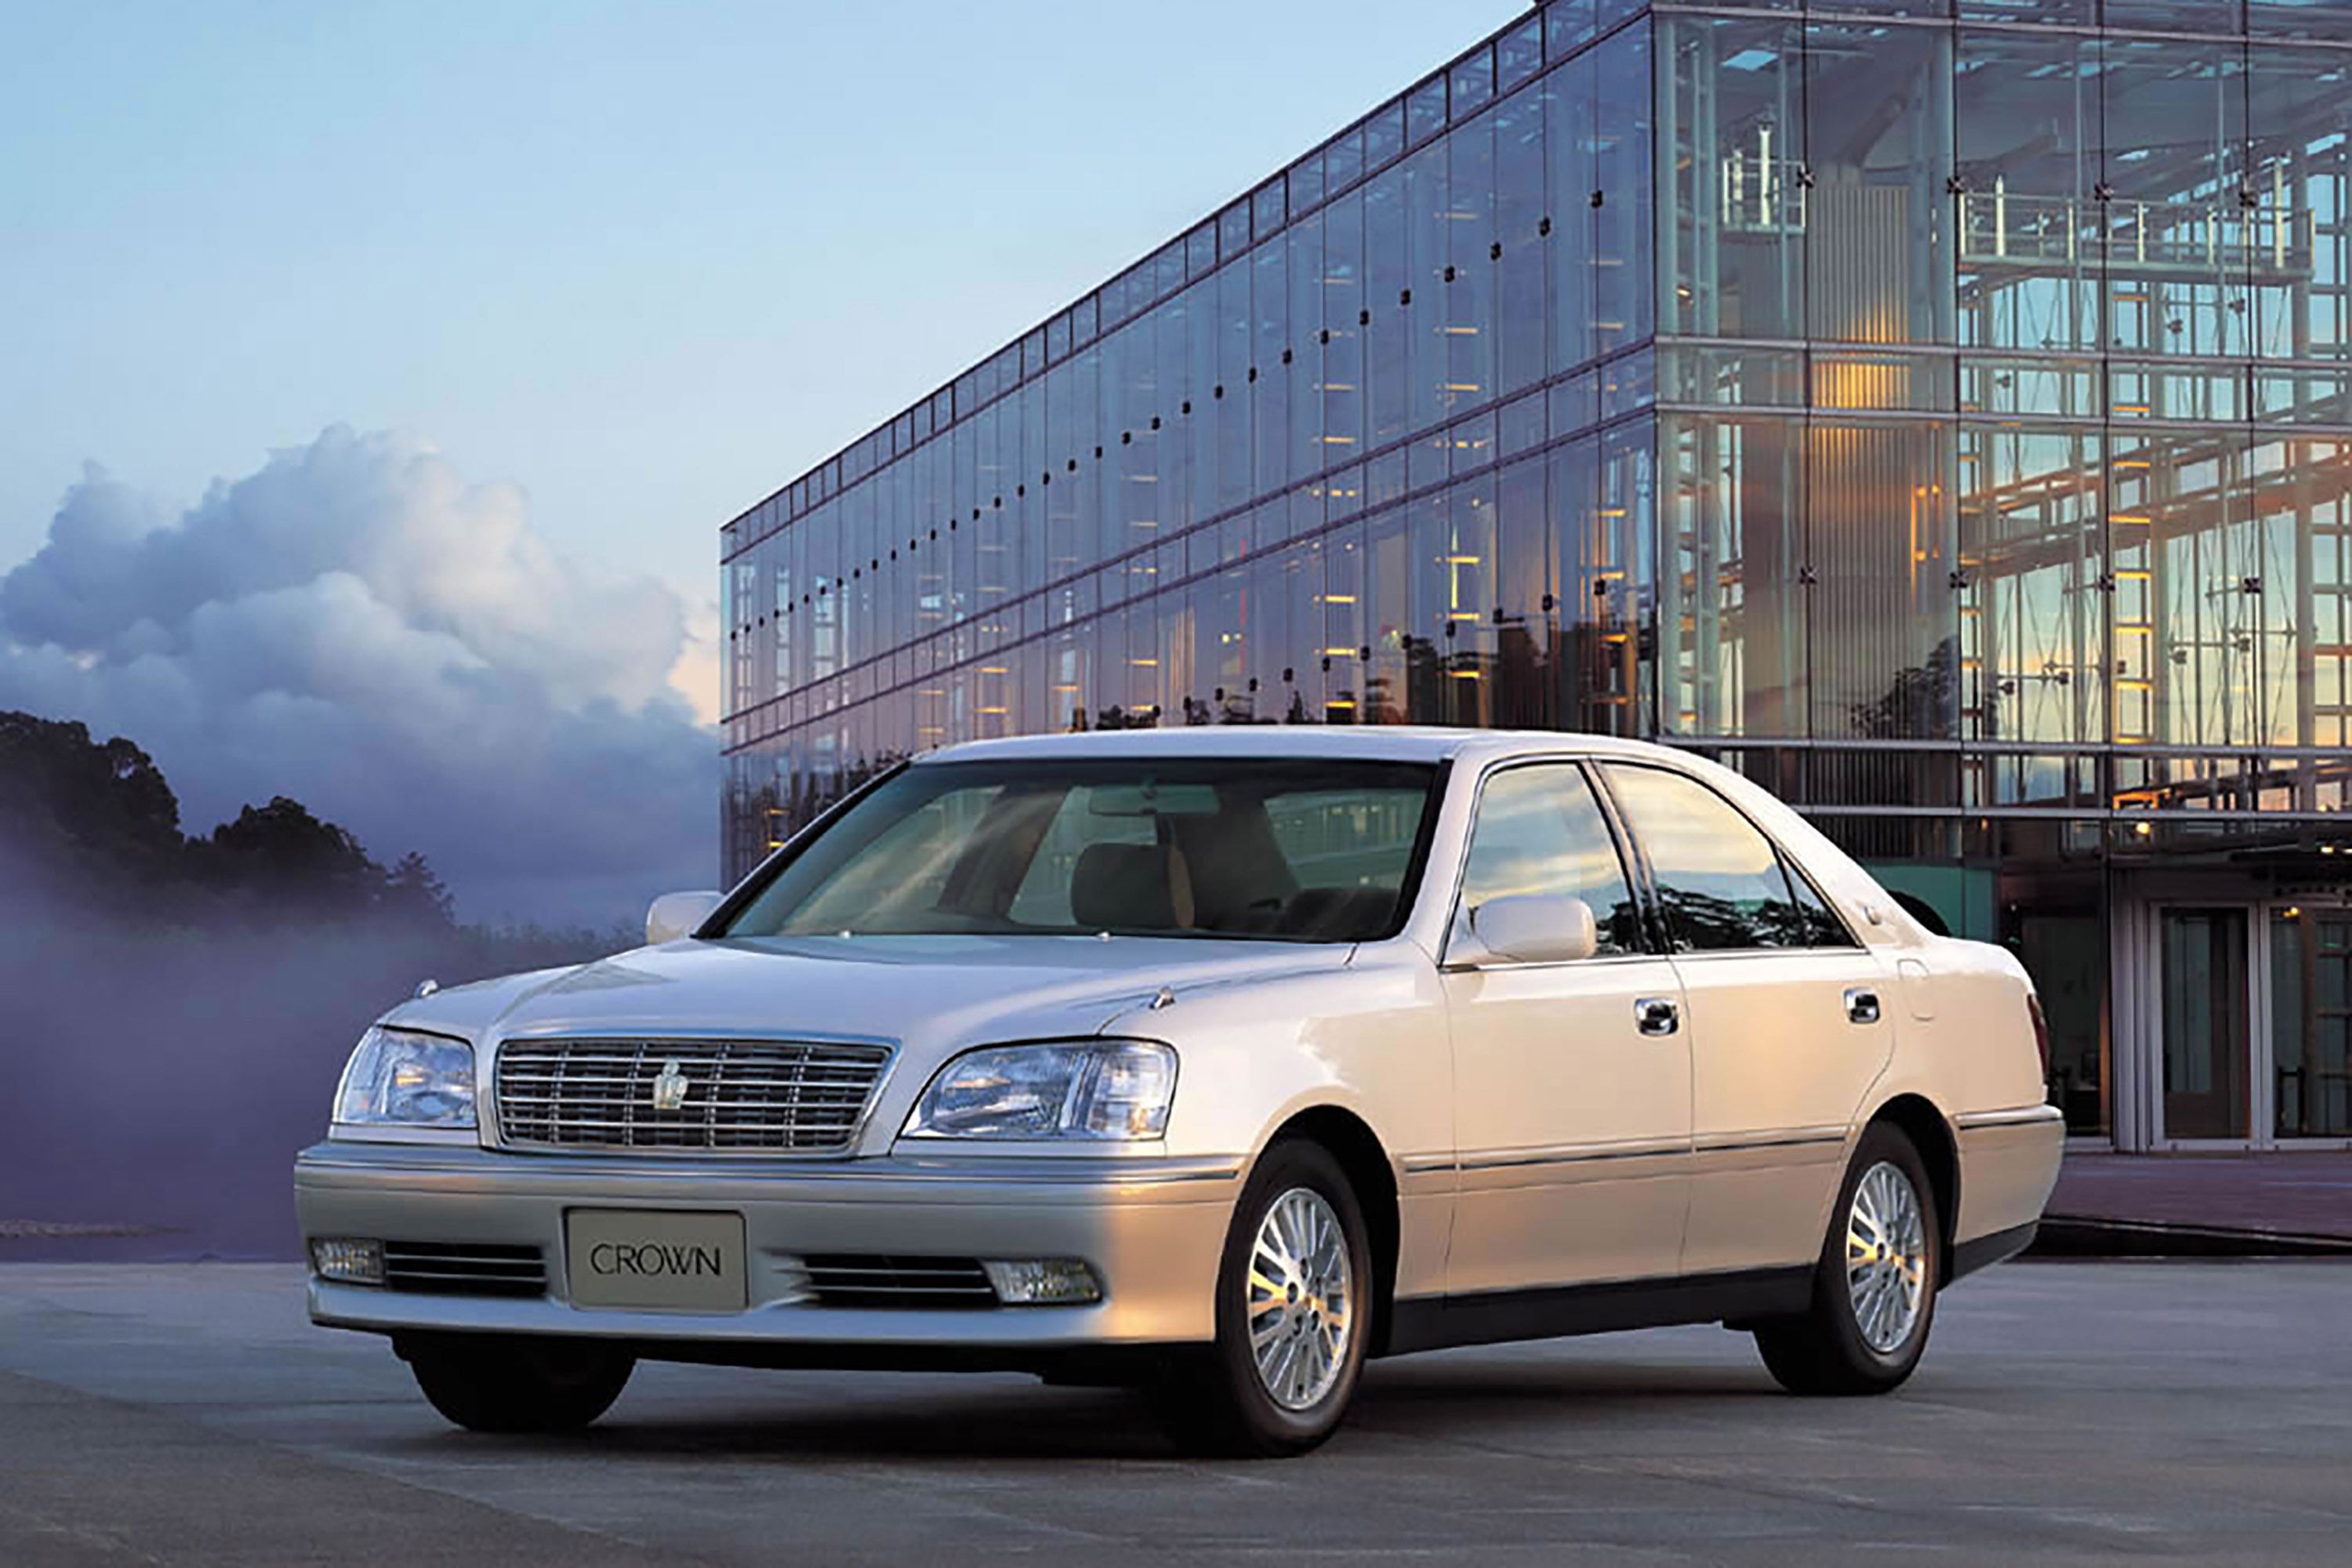 丰田皇冠作为一款经典的汽车品牌,旗下的车型真可谓是一代人的青春